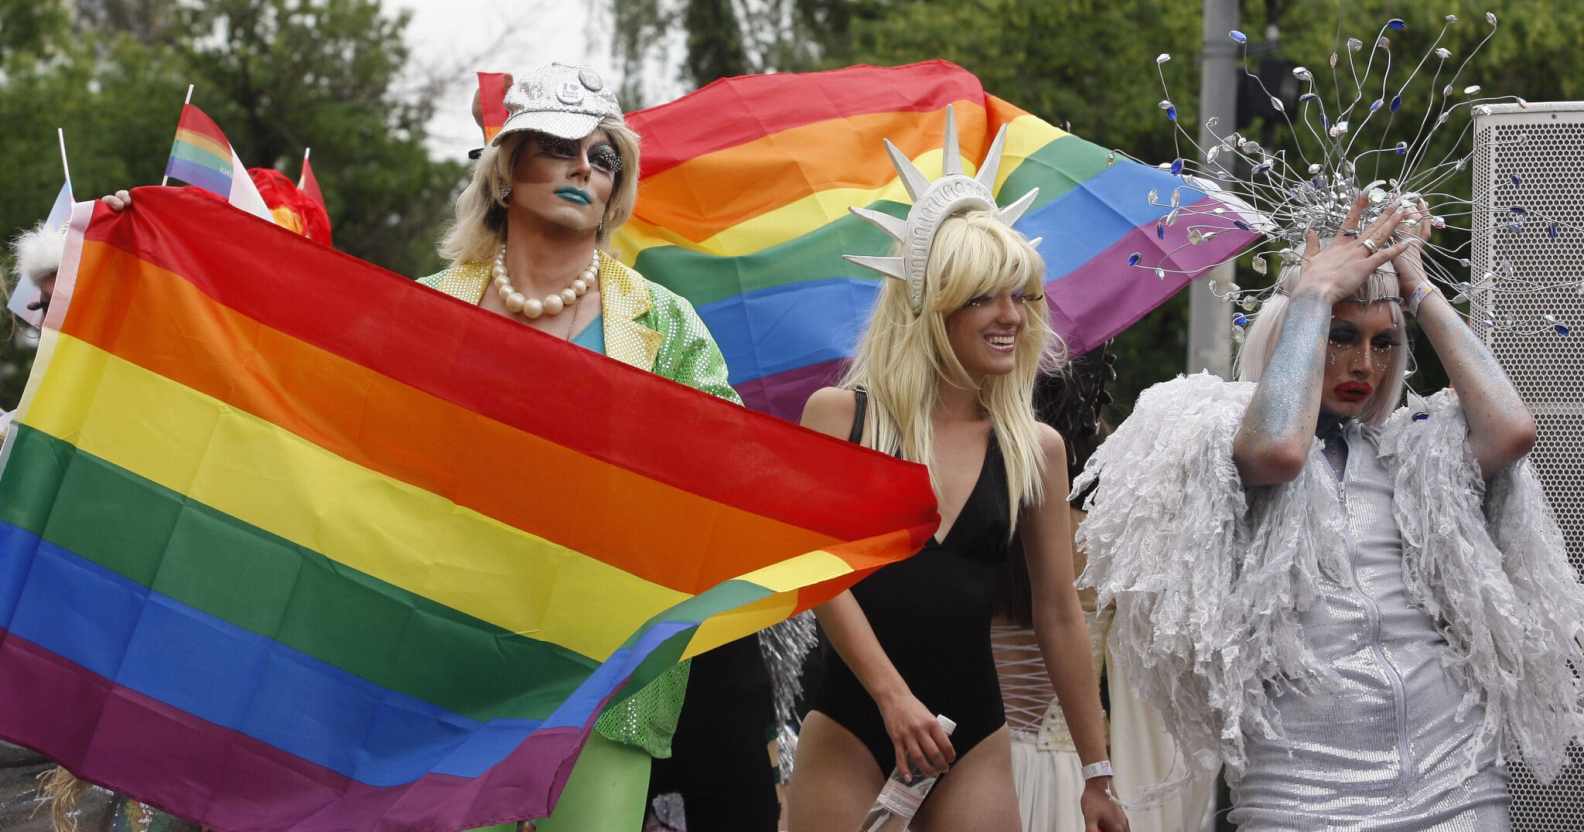 Pride-goers waving rainbow flags in Kyiv